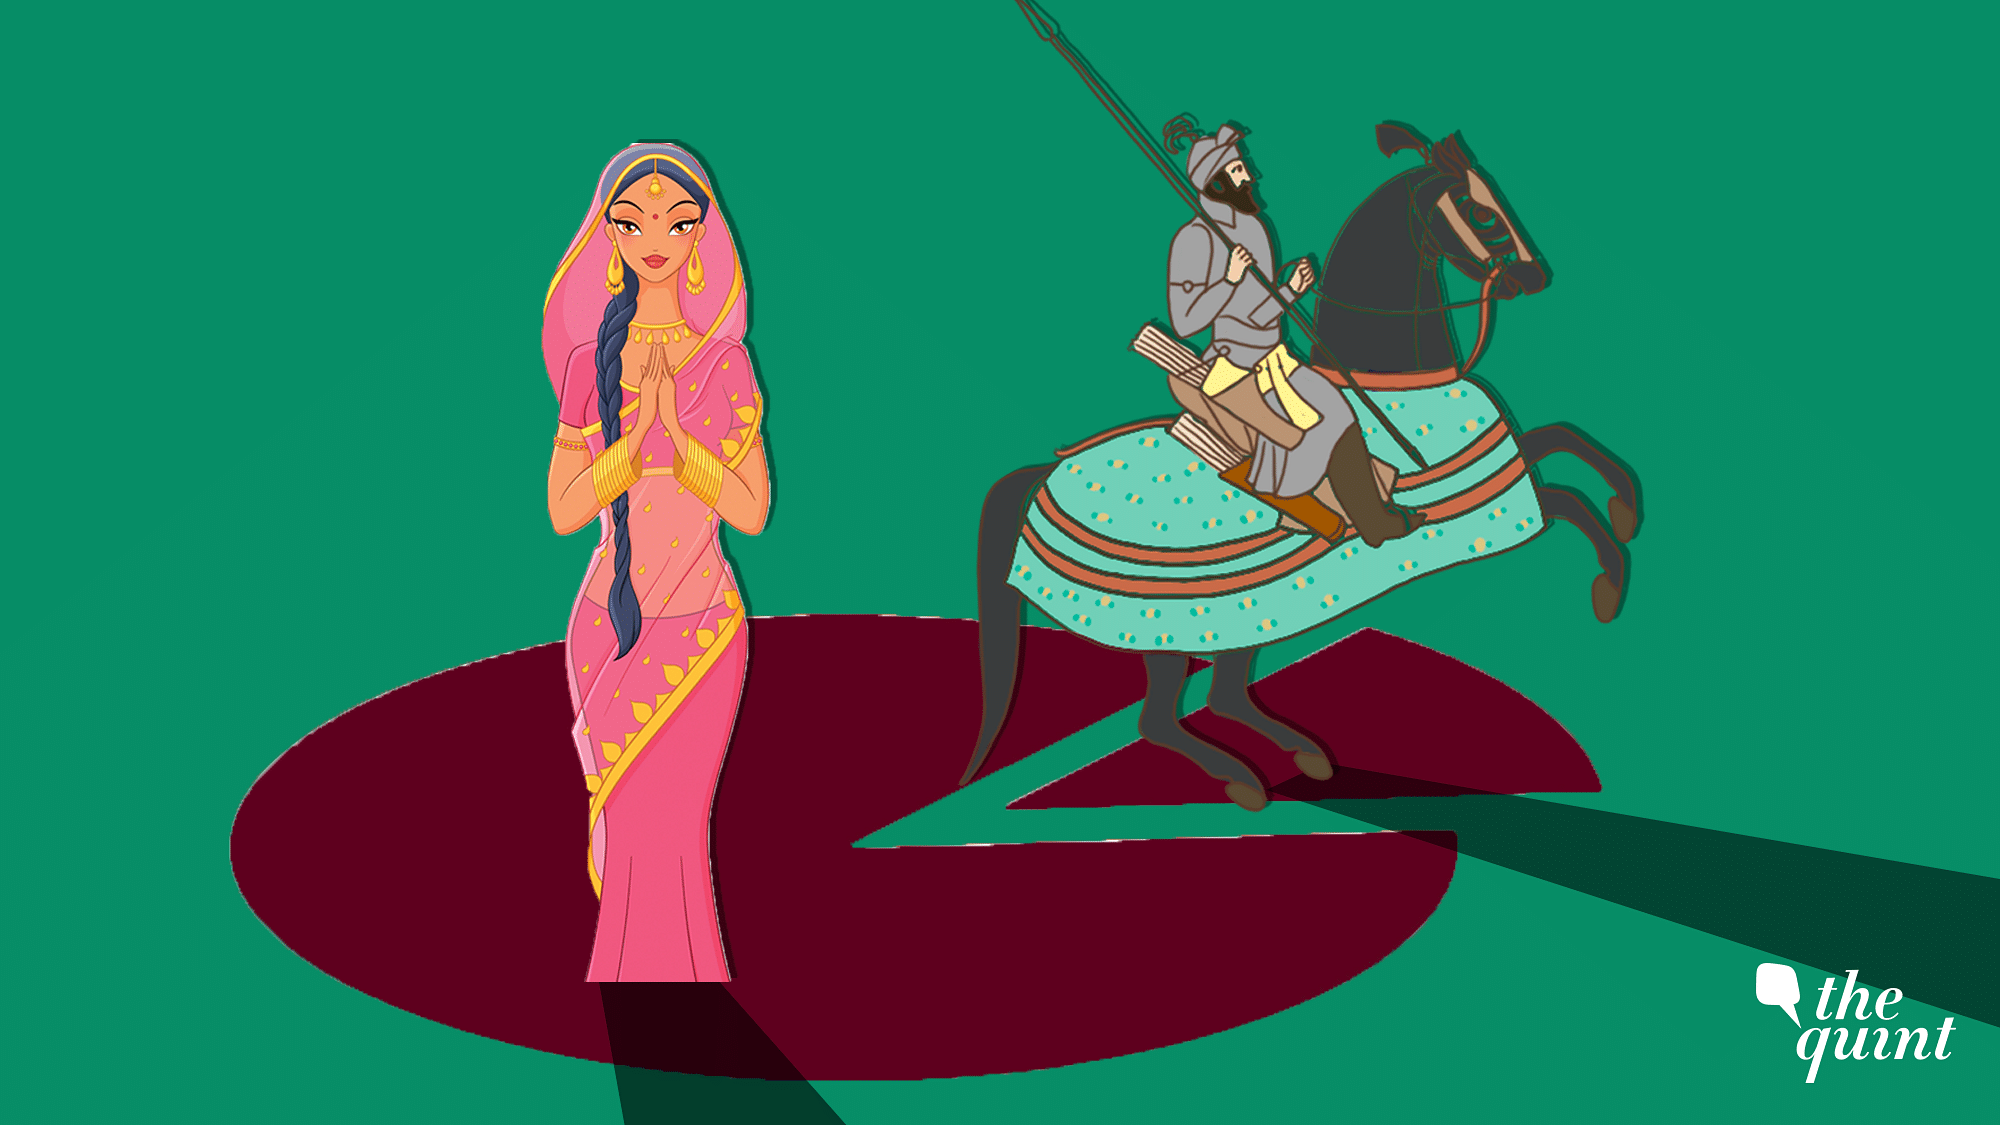 Illustration of Rani Padmini and Mughal ruler Aurangzeb used for representational purposes.